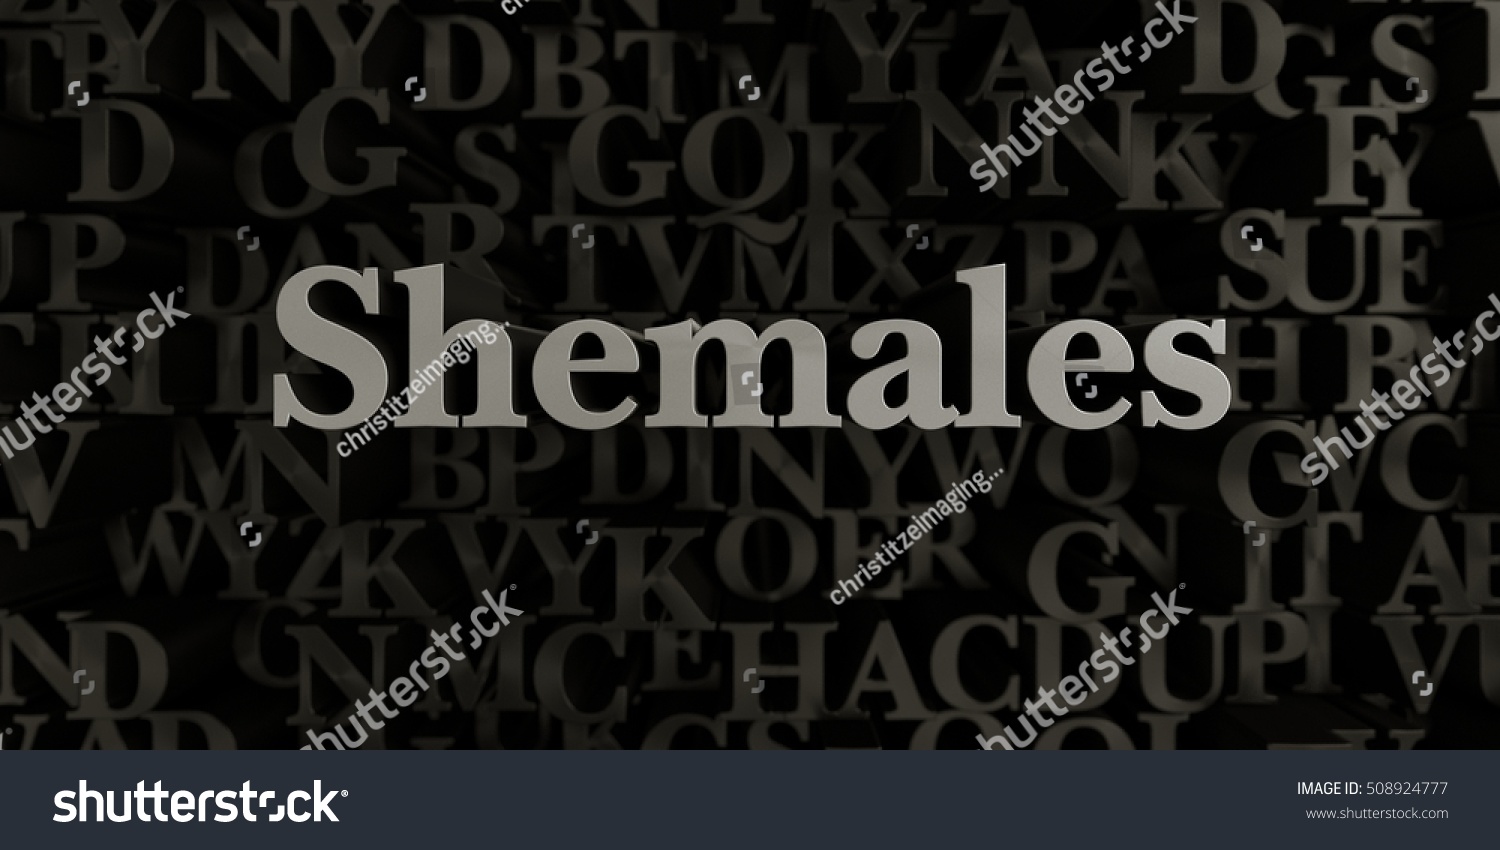 Shemale Stocks